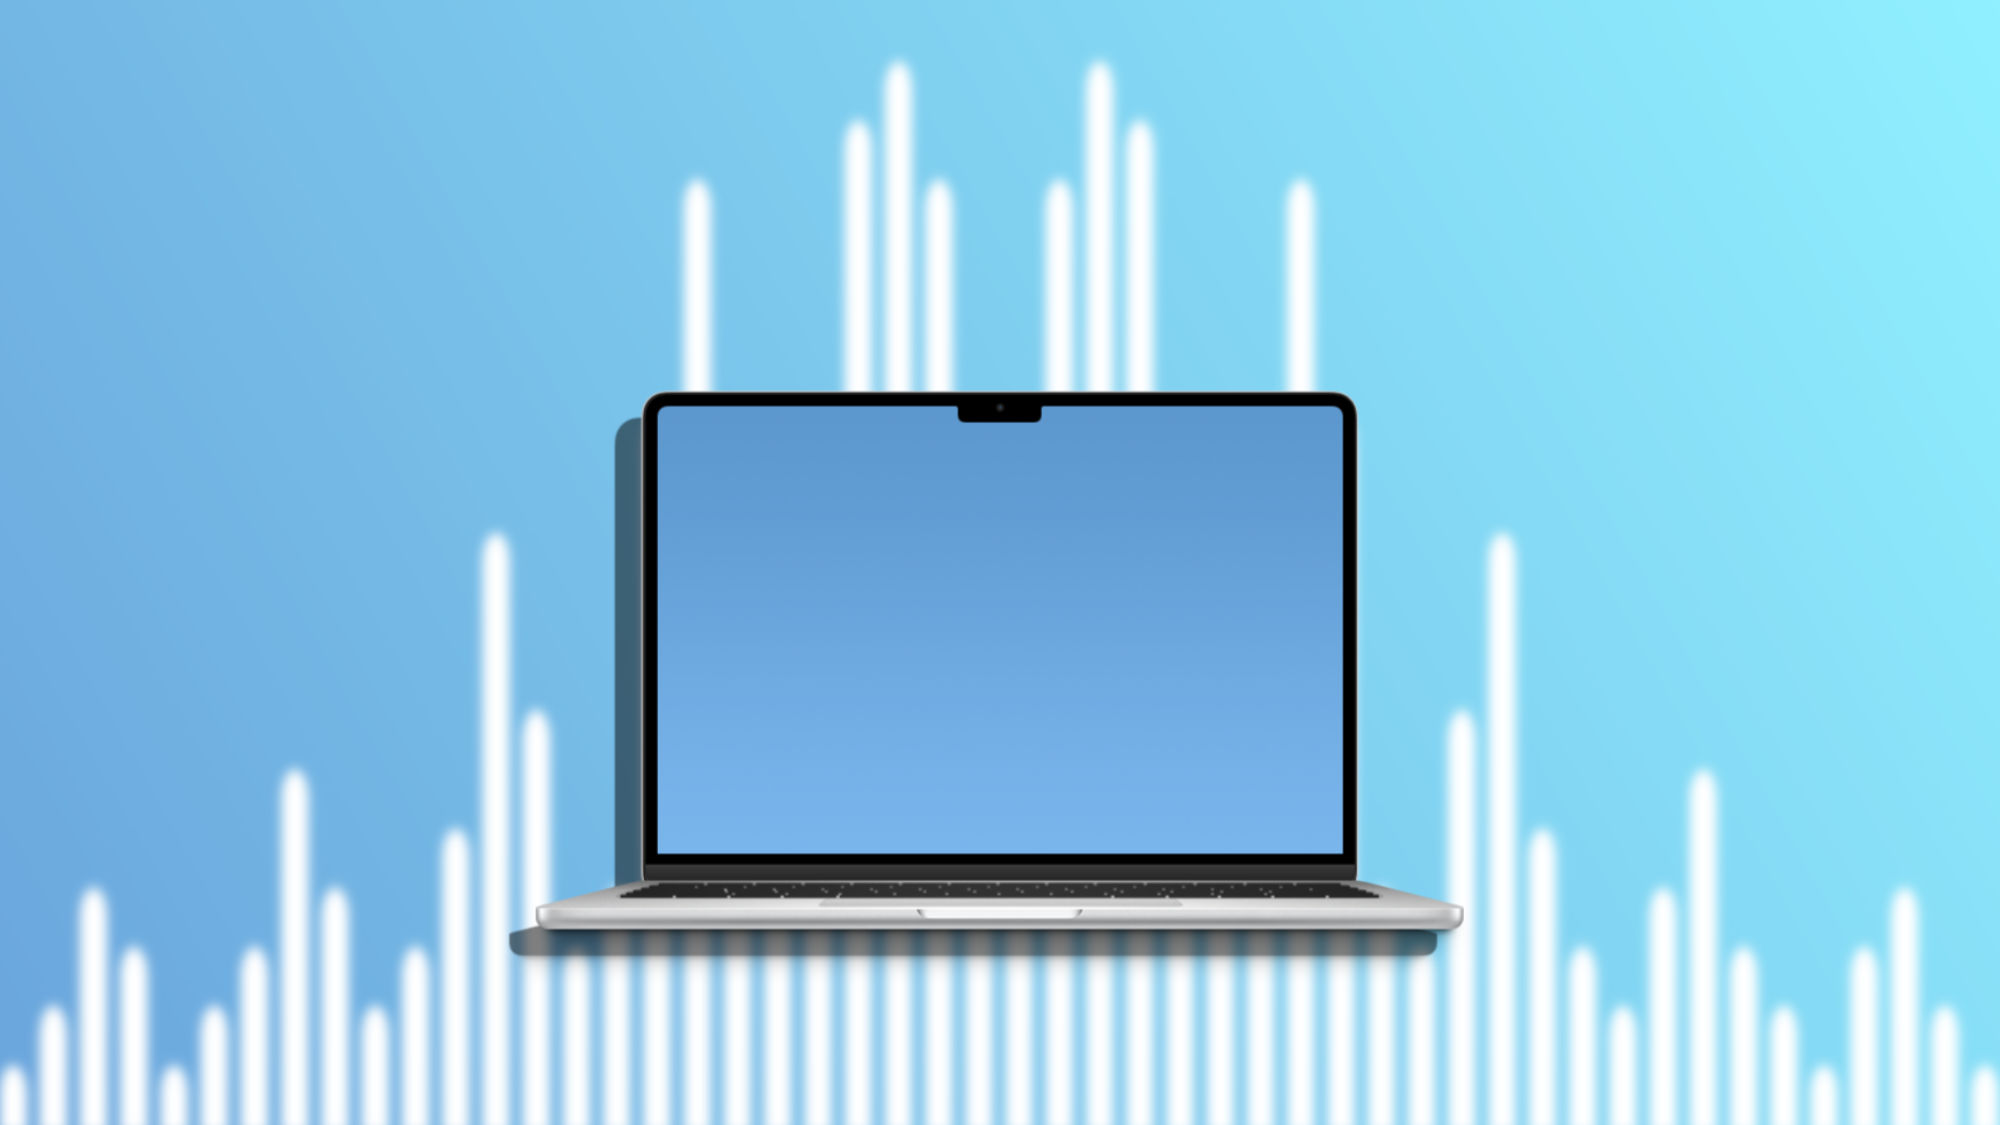 Cómo reproducir sonidos ambientales en nuestro Mac sin apps de terceros ni conexión